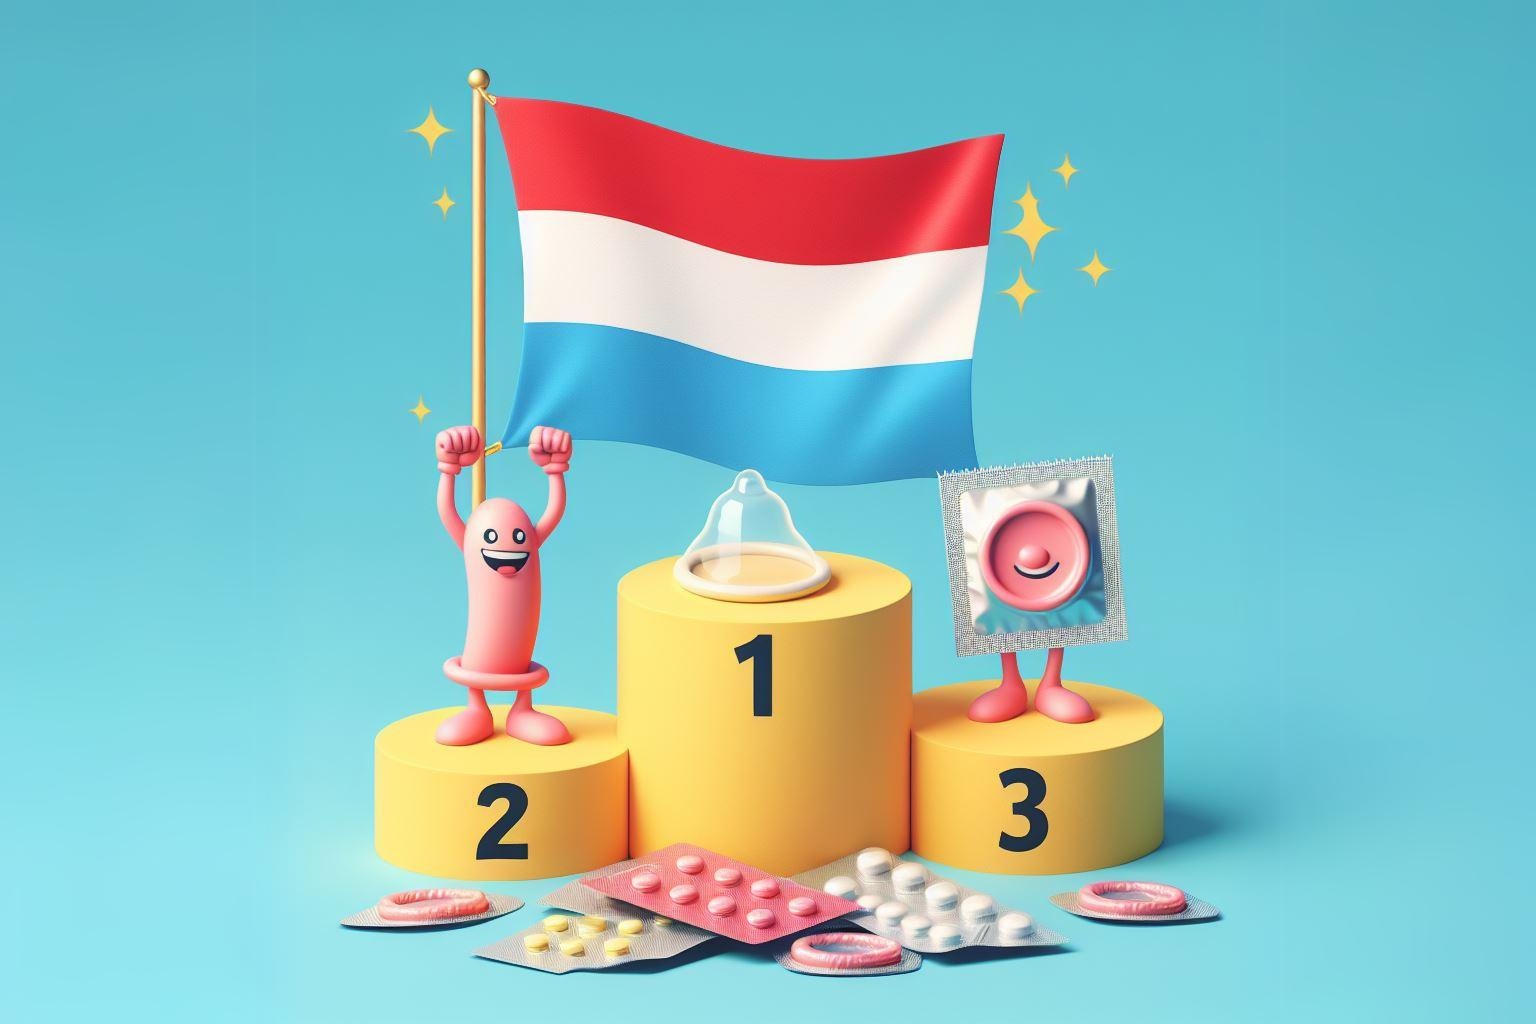 Bandiera lussemburghese come numero 1 sul podio dei vincitori sul tema della contraccezione